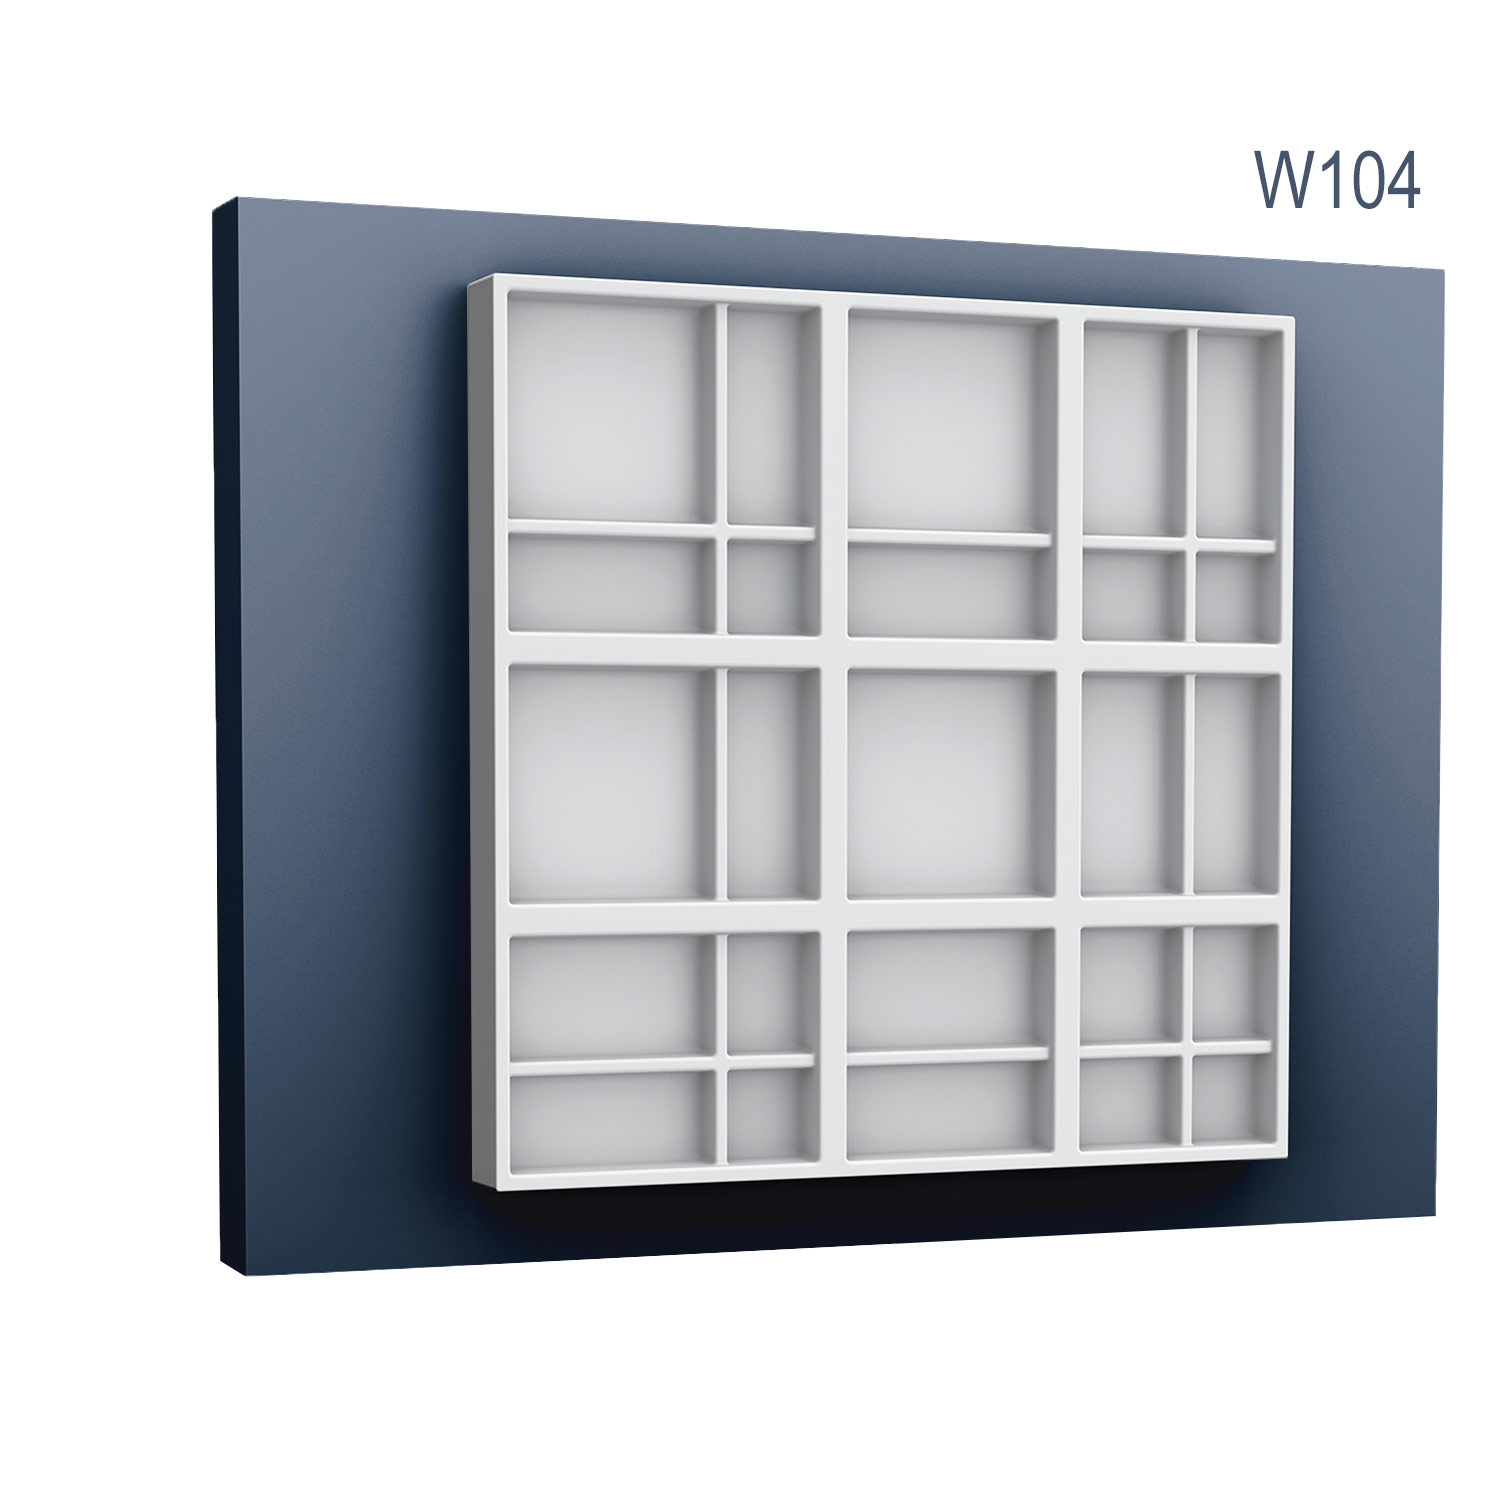 Panel Modern W104, Dimensiuni: 45 X 45 X 3.6 cm, Orac Decor